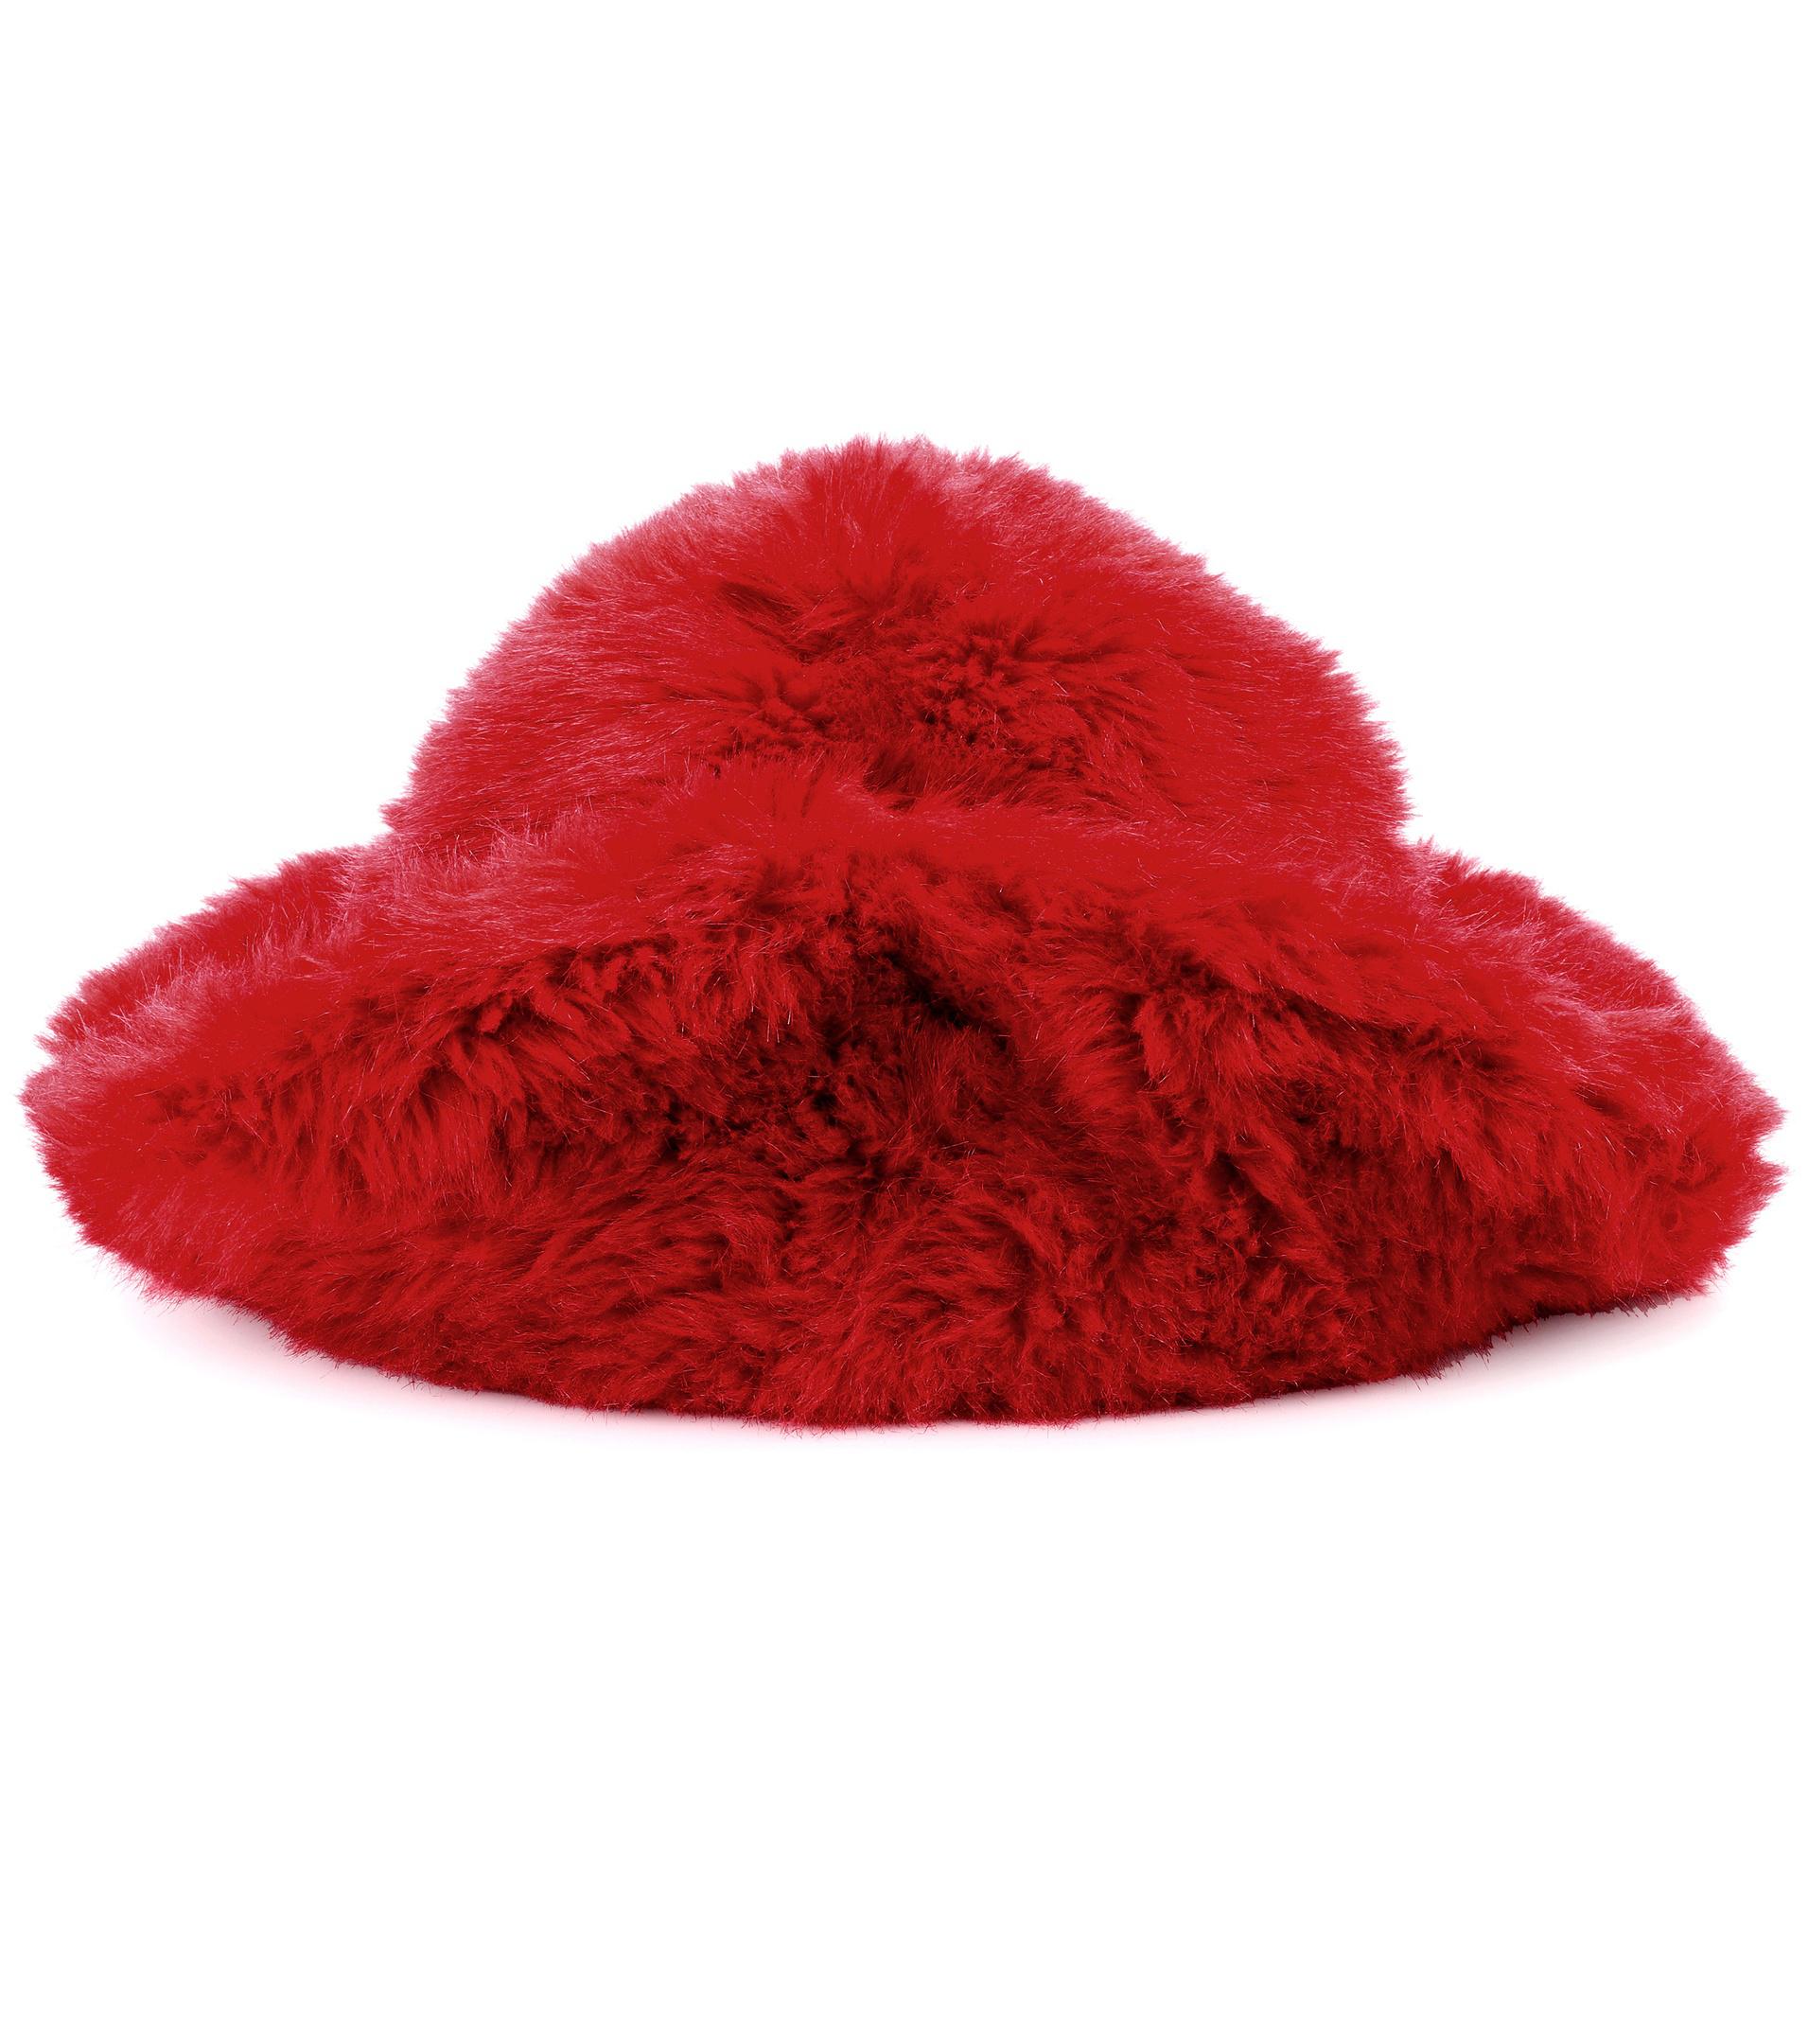 Miu Miu Faux Fur Hat in Red - Lyst